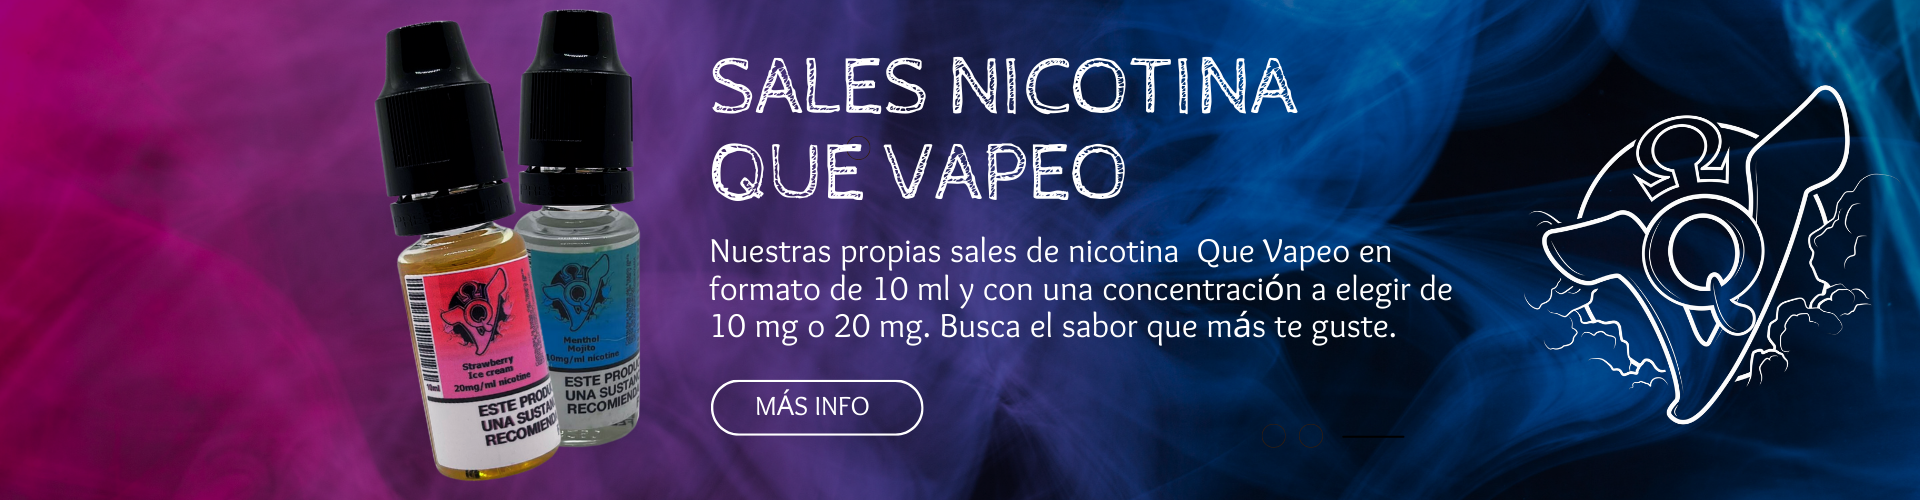 Tienda Vapeo en Málaga Pods, E-líquidos y Sales de Nicotina